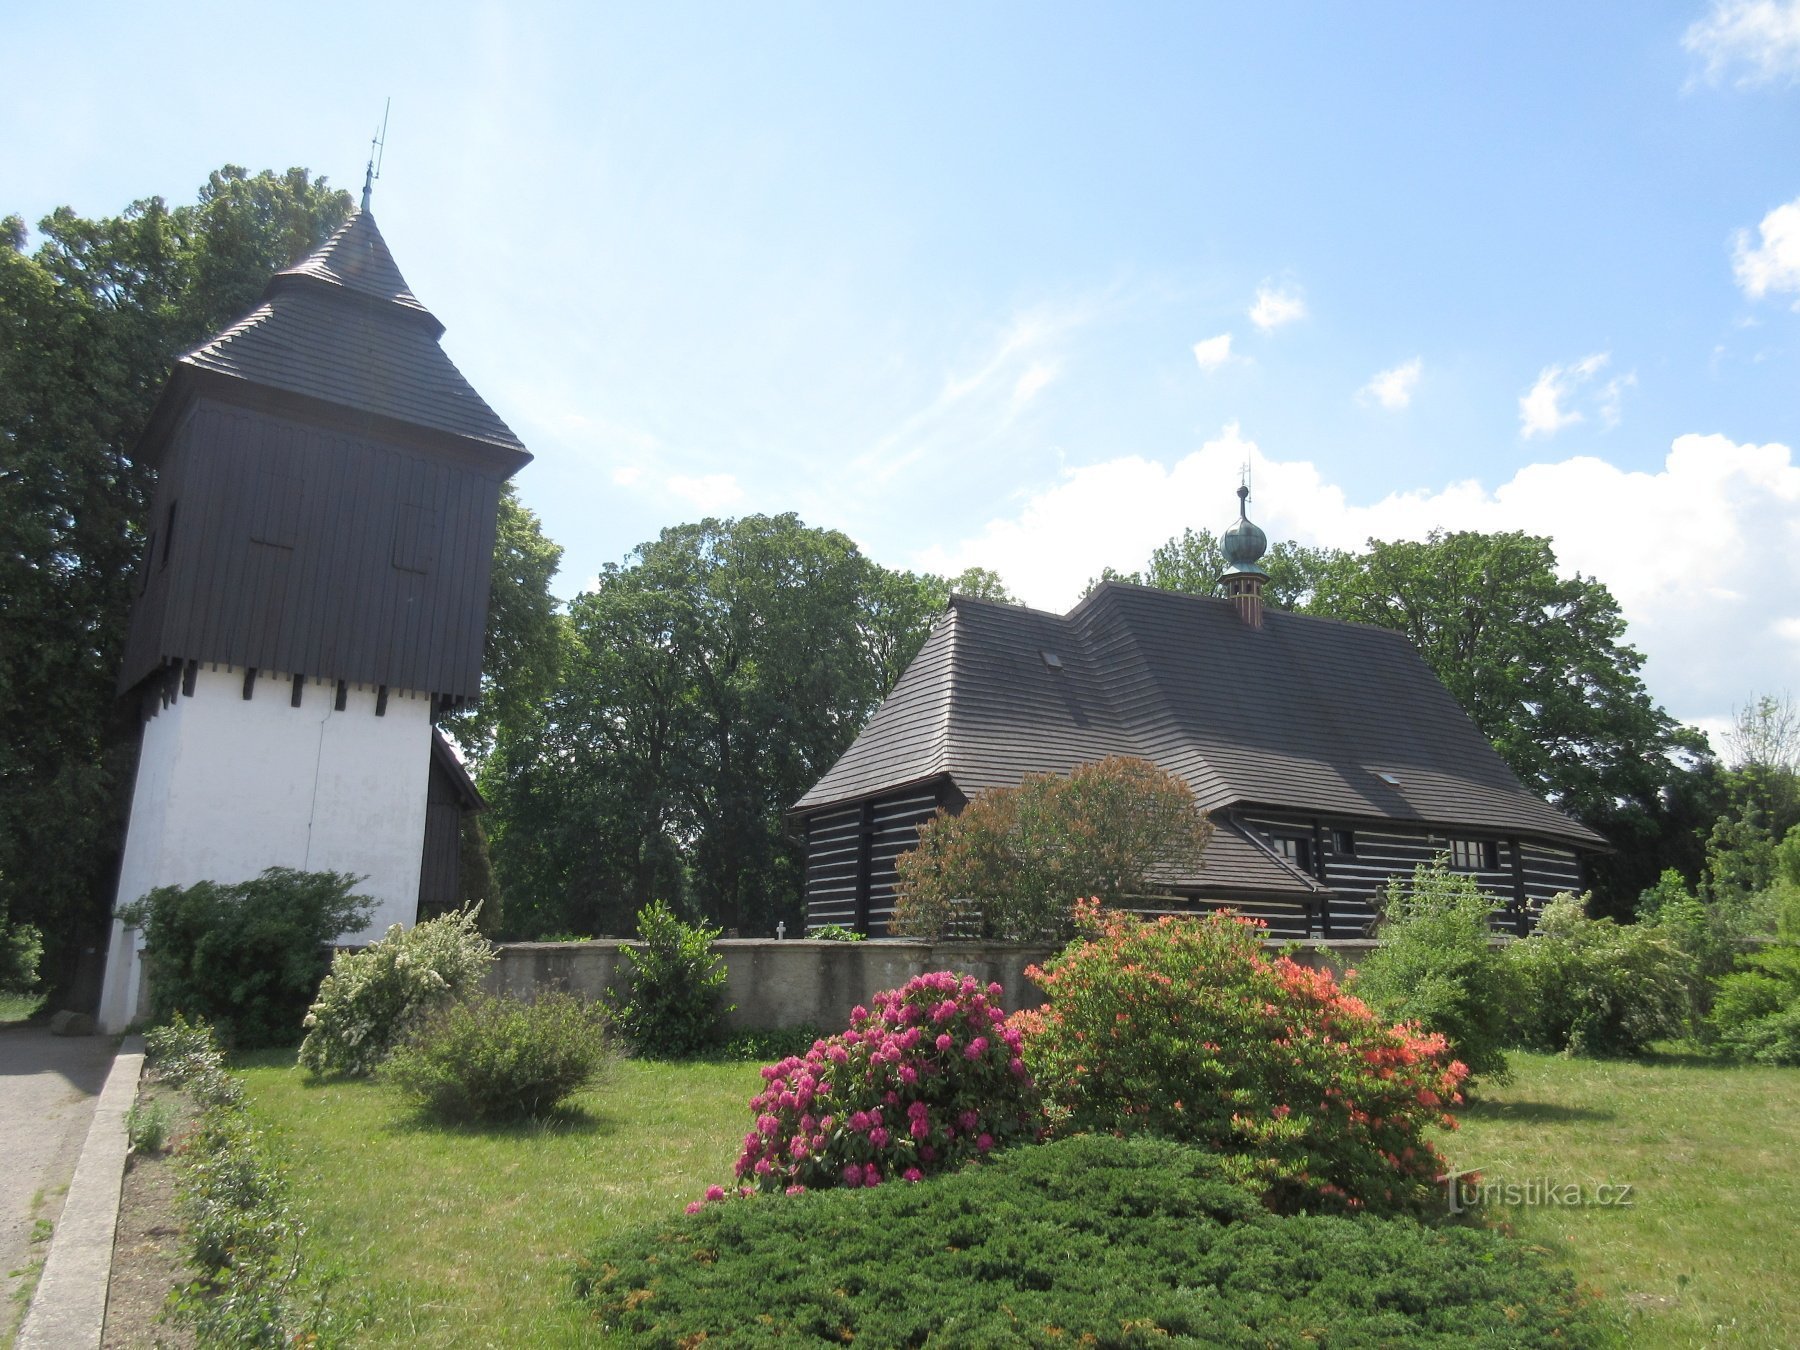 Slavoňov - église en bois de St. Jean-Baptiste avec le beffroi